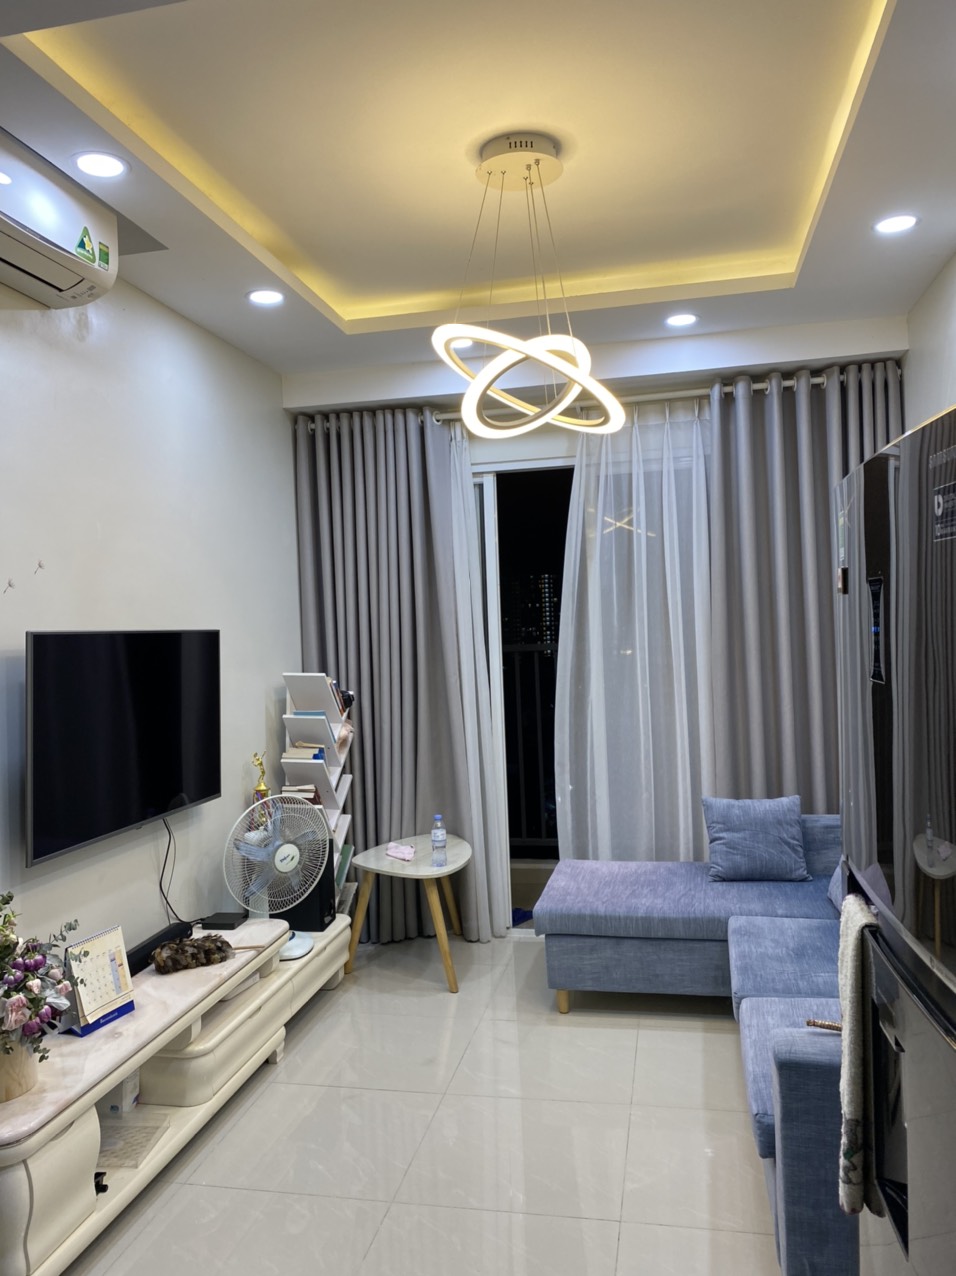 Cho thuê căn hộ Carillon 5 quận Tân Phú, 72m2 2PN, 2WC Full nội thất cao cấp, Giá cực rẻ  LH: 0372972566  13219508